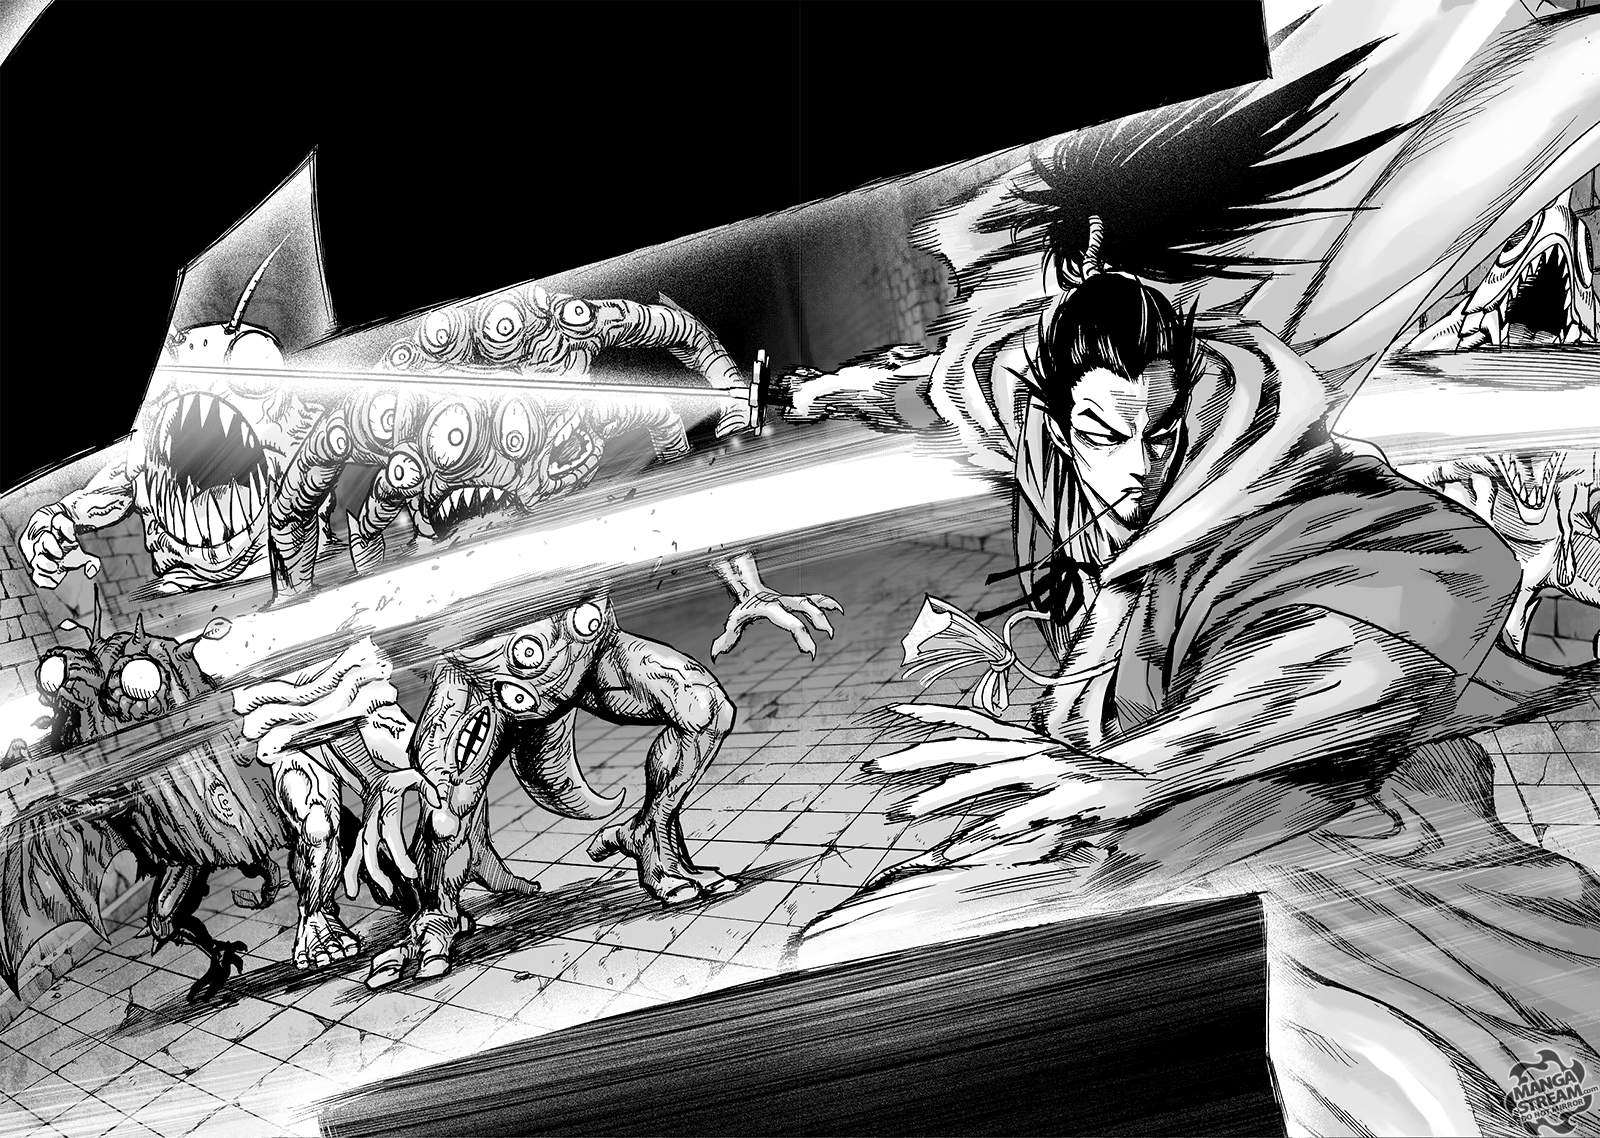 One Punch Man, Chapter 110 - Atomic Samurai image 07